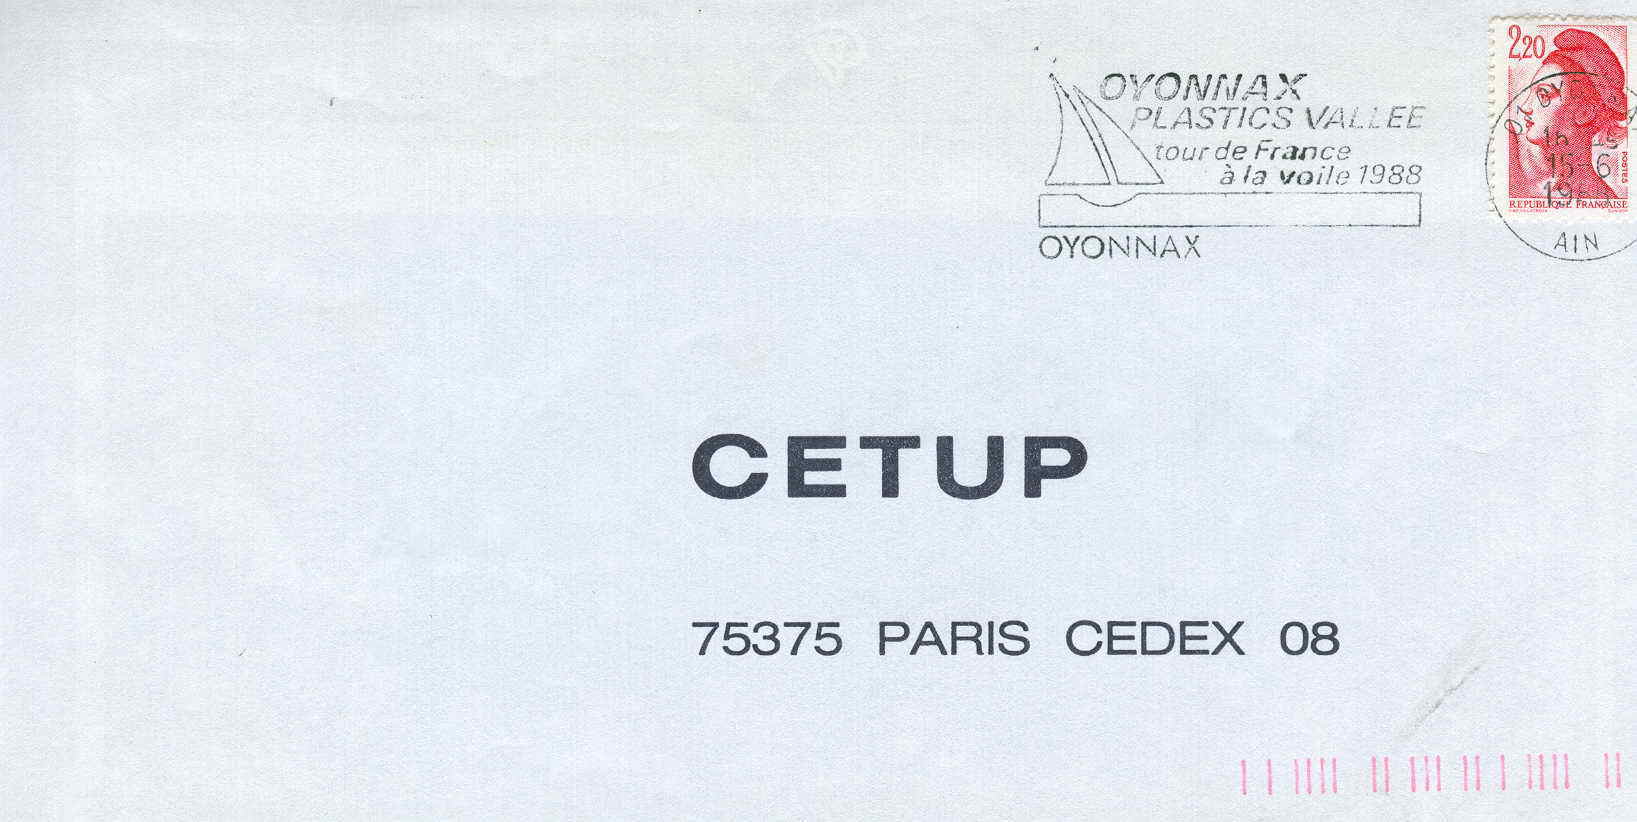 VOILE OBLITERATION TEMPORAIRE TOUR DE FRANCE A LA VOILE 1988 OYONNAX - Segeln